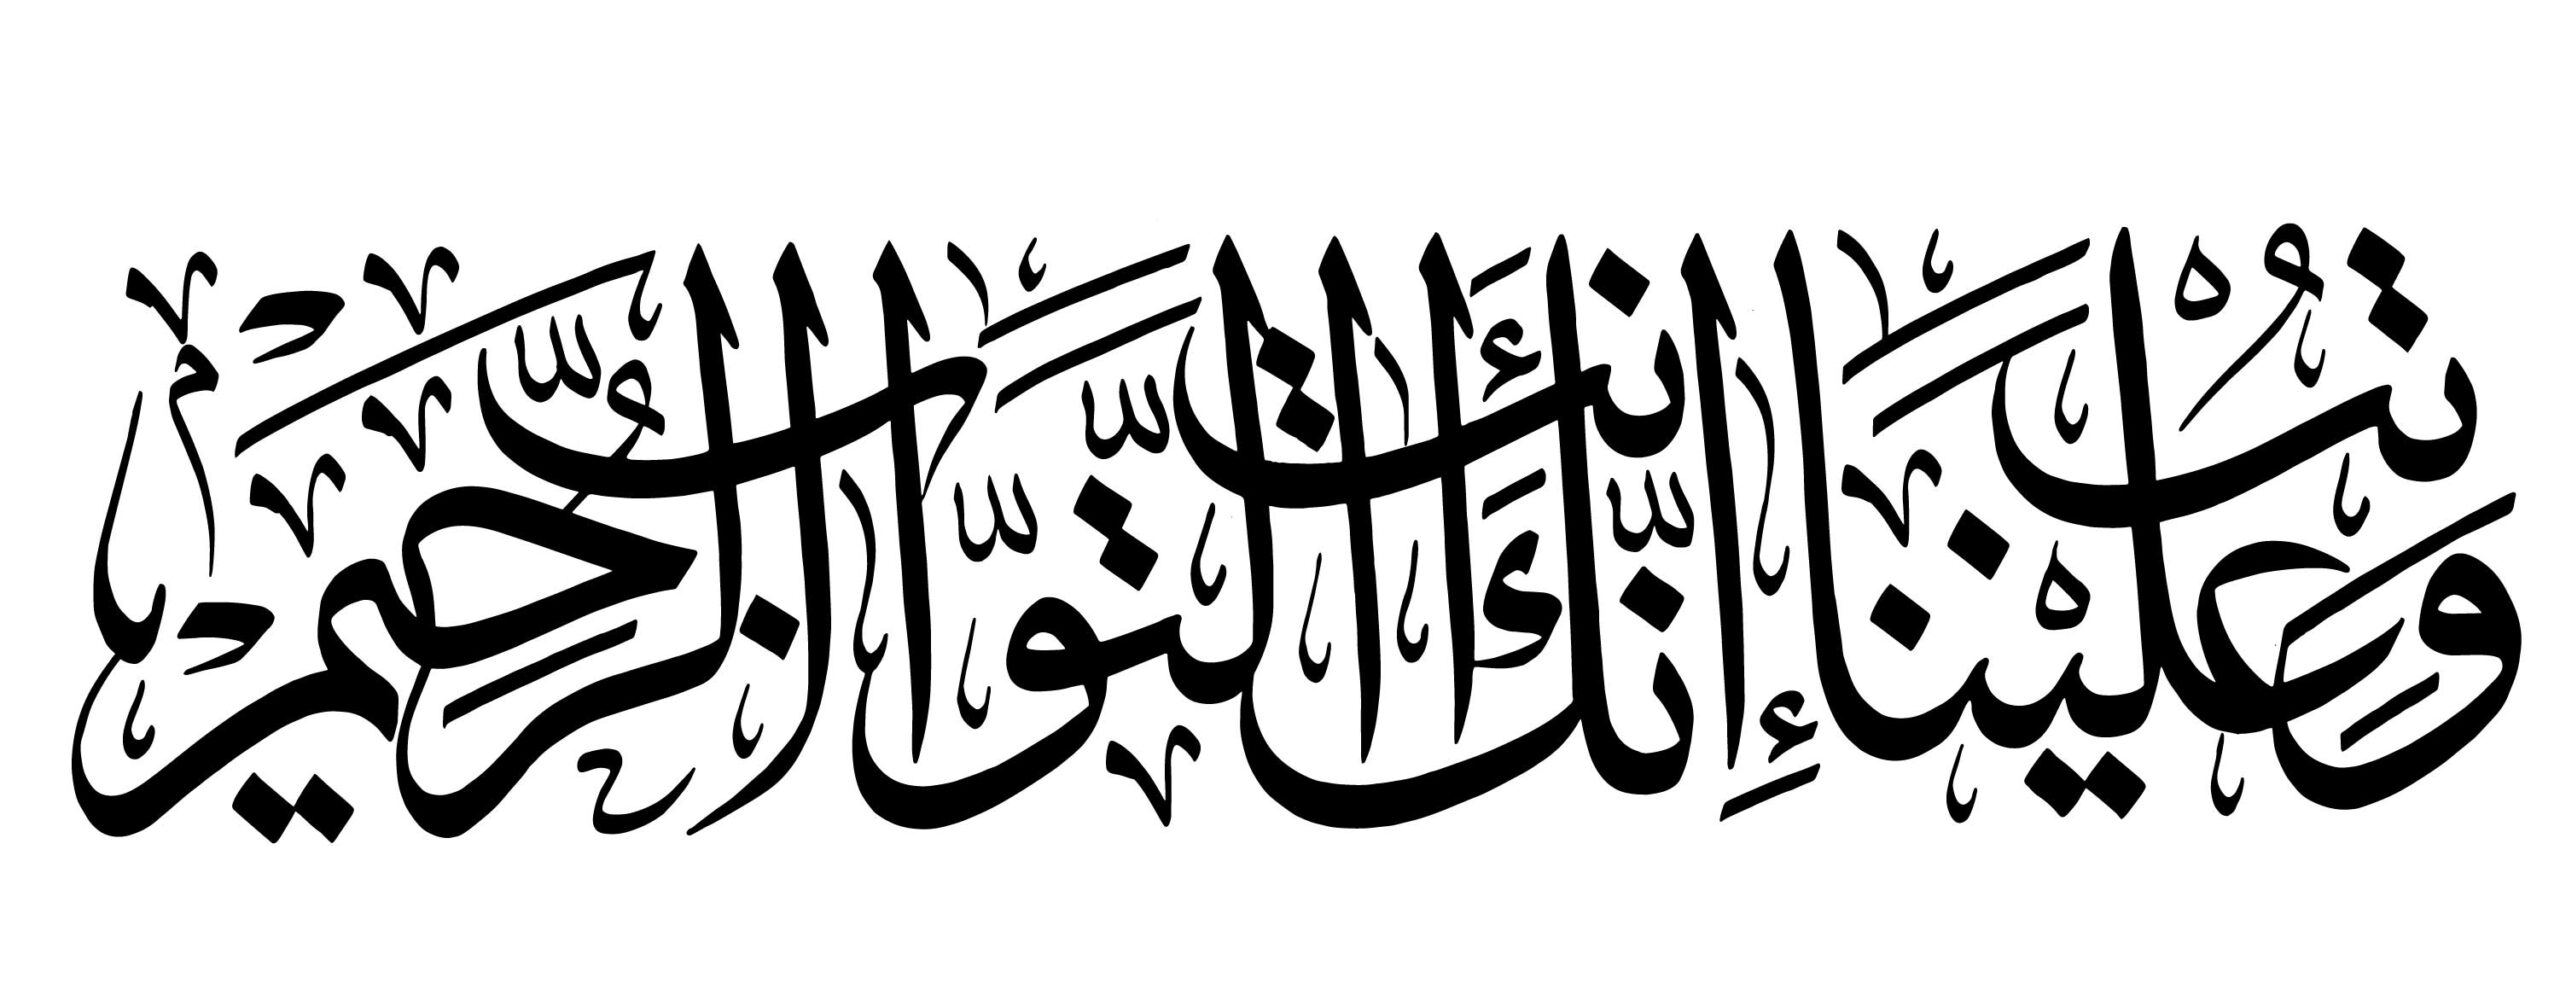 Al-Baqarah 2, 128 - Free Islamic Calligraphy